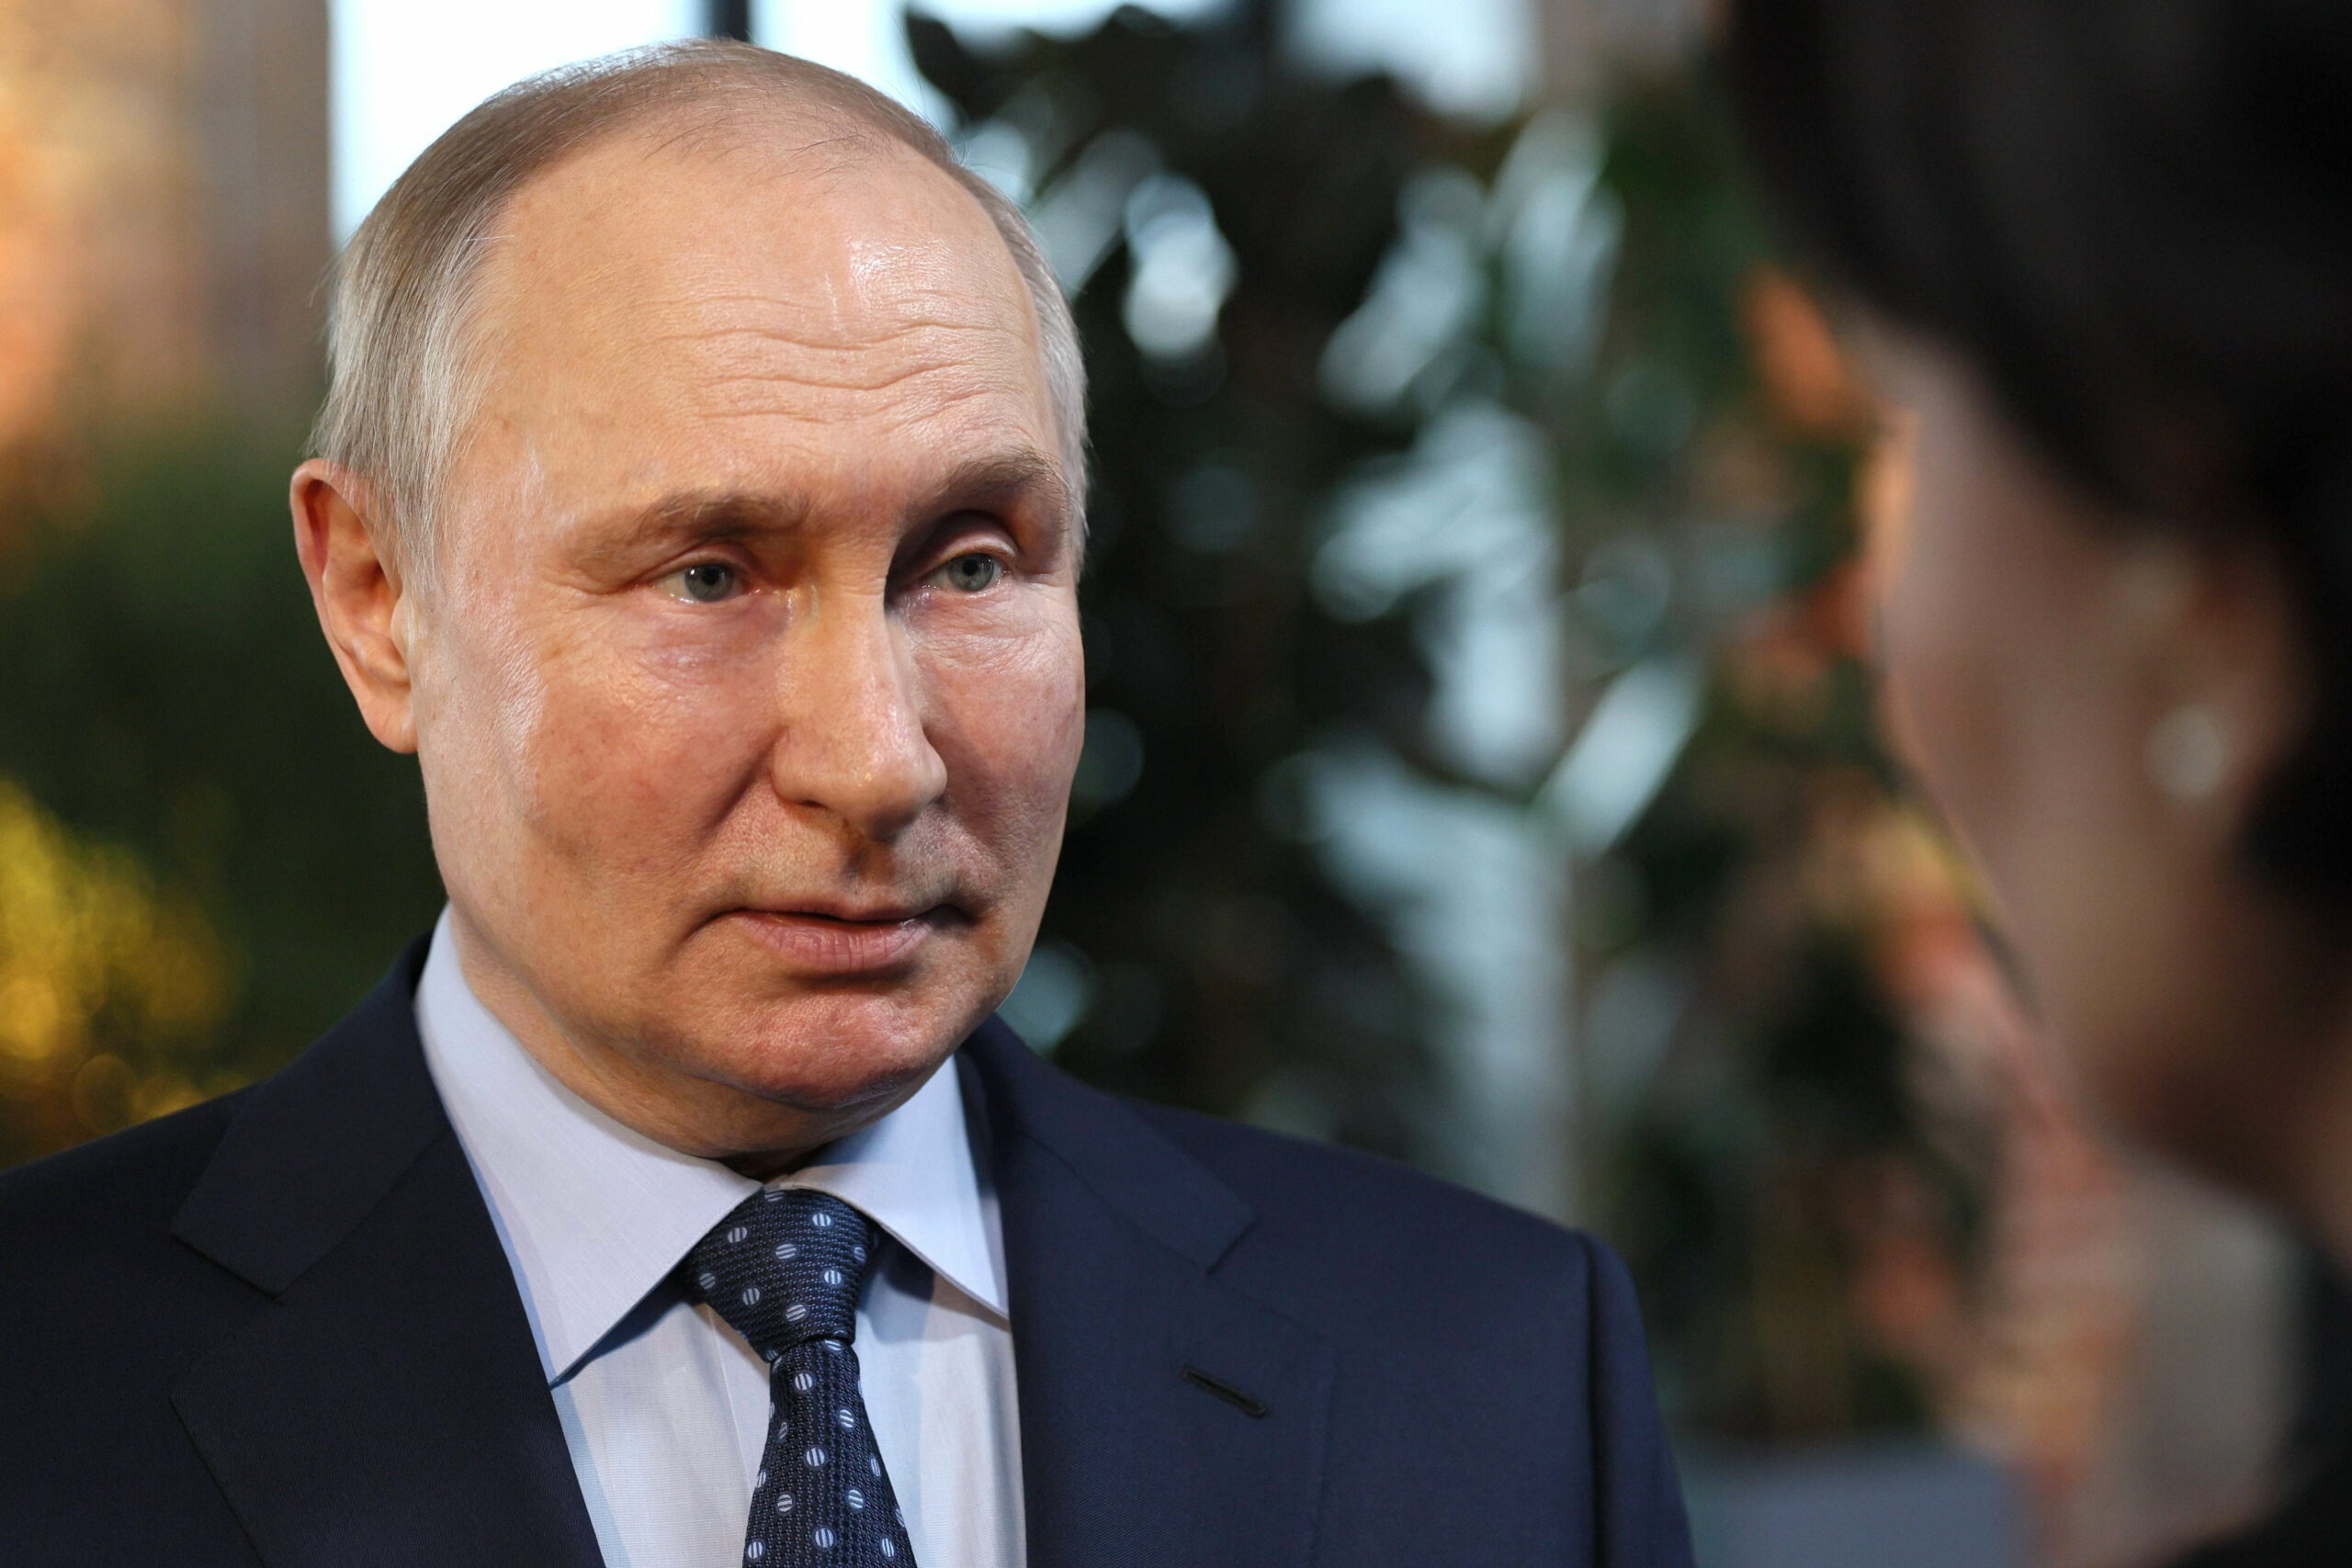 Leleplezte Putyin hasonmásait egy ukrán hírszerző, egyértelművé váltak a különbségek